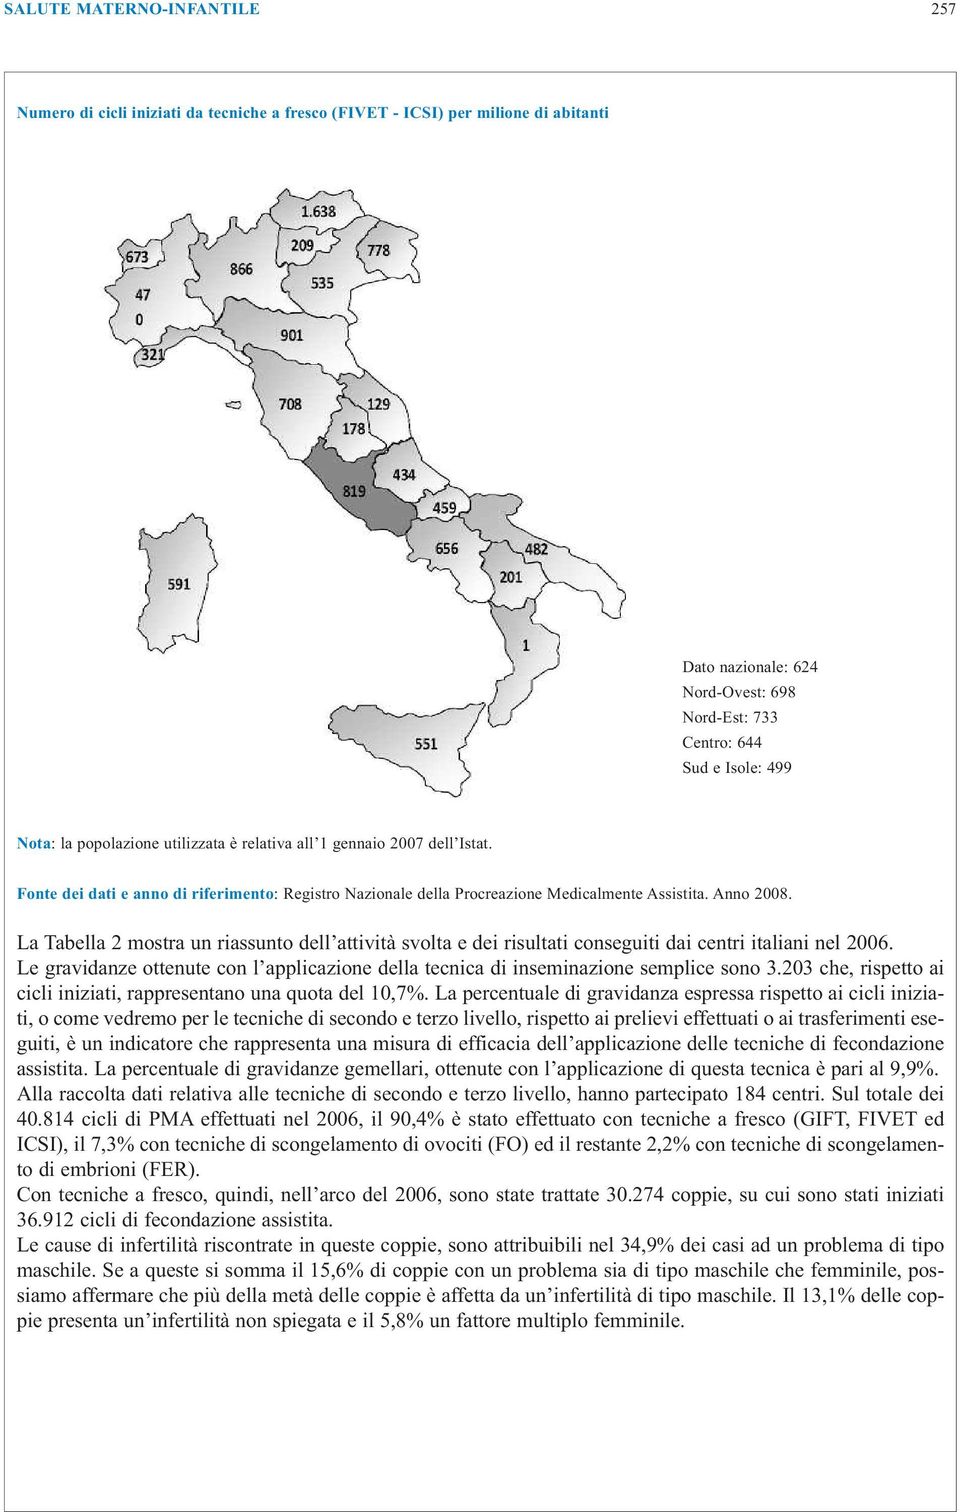 La Tabella 2 mostra un riassunto dell attività svolta e dei risultati conseguiti dai centri italiani nel 2006. Le gravidanze ottenute con l applicazione della tecnica di inseminazione semplice sono 3.